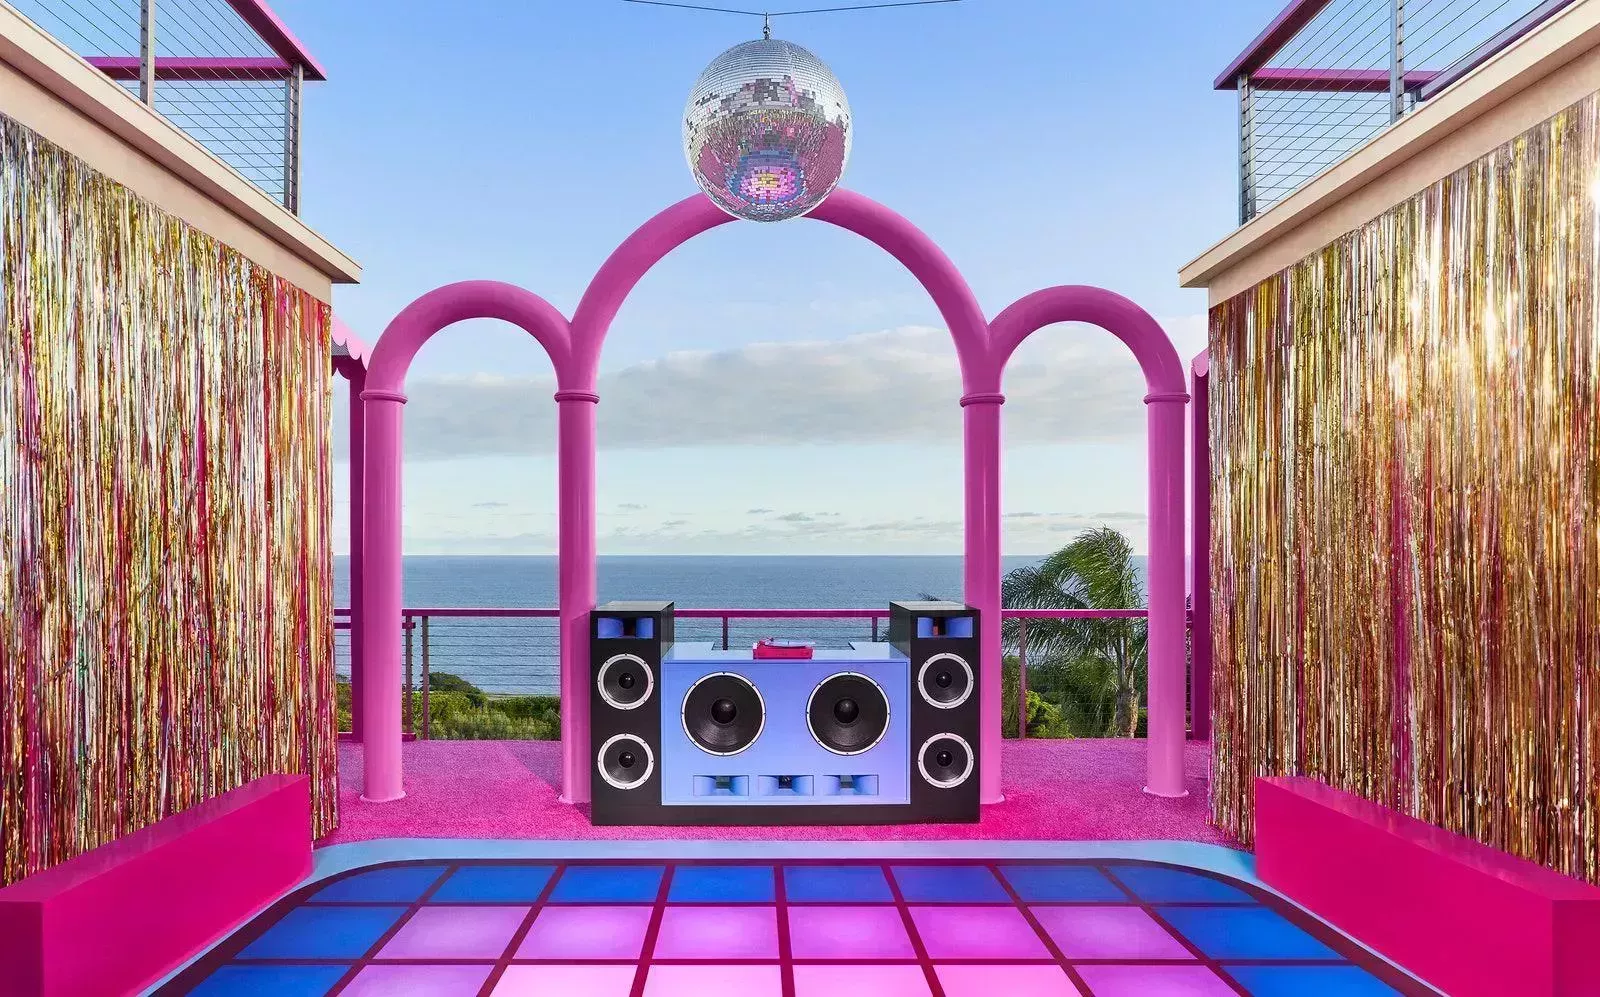 Puedes alojarte gratis en la casa de ensueño de Barbie en Malibú. Te explicamos cómo.